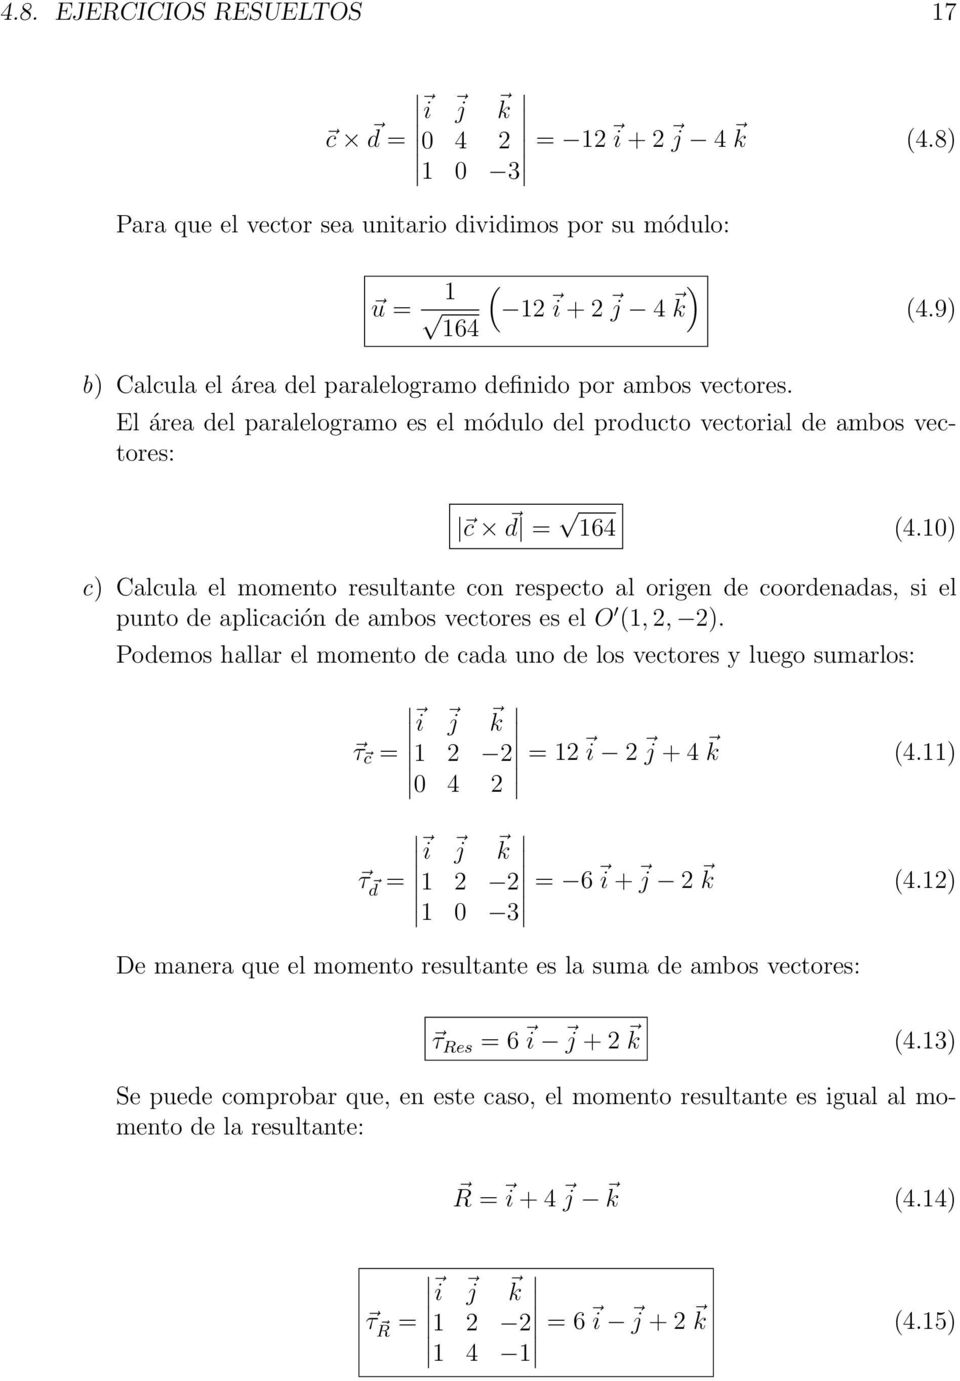 10) c) Calcula el momento resultante con respecto al origen de coordenadas, si el punto de aplicación de ambos vectores es el O (1, 2, 2).